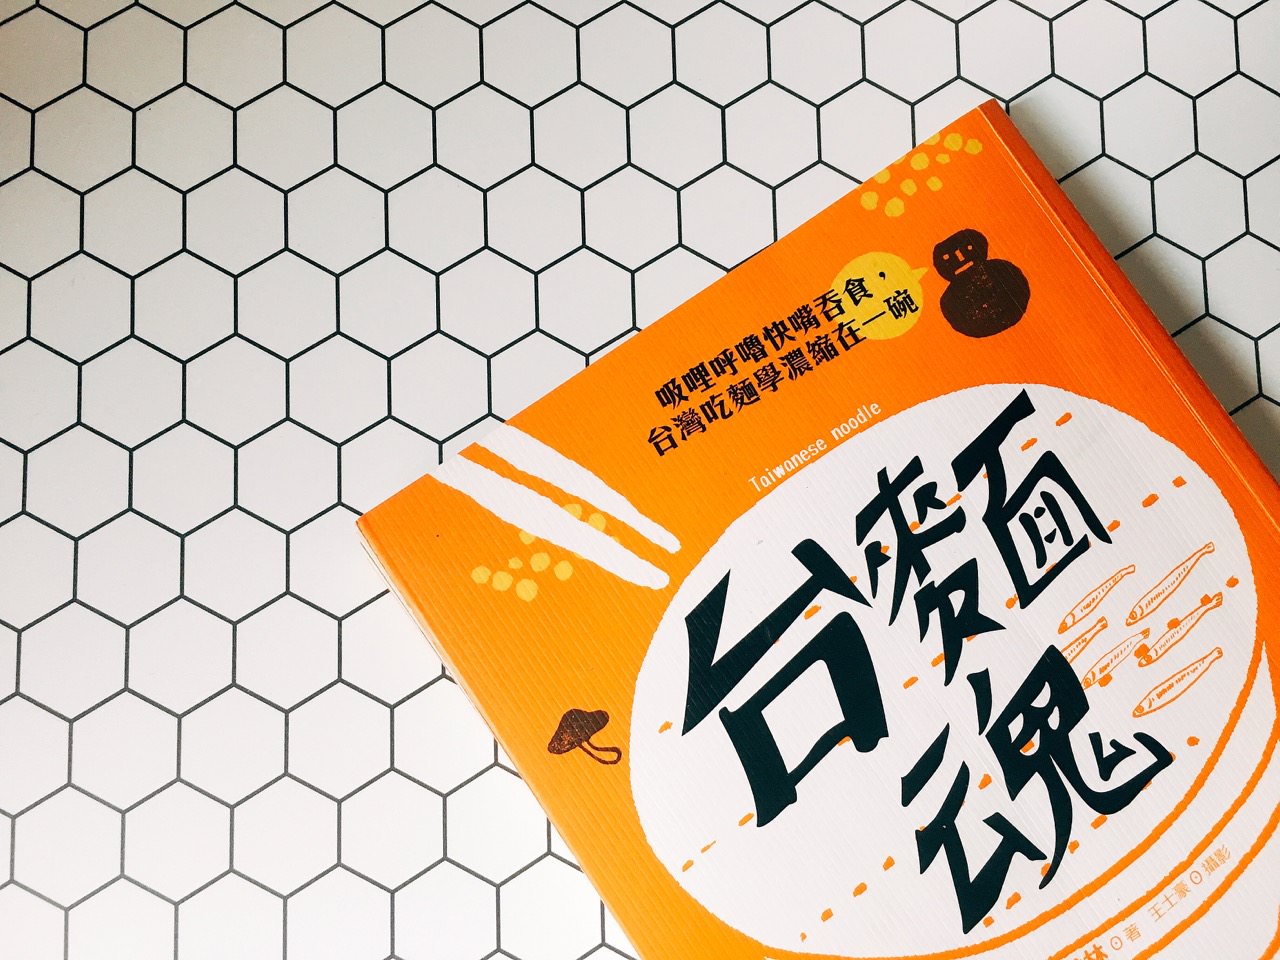 台麵魂 Book Review 》Taiwan Noodle Introduction